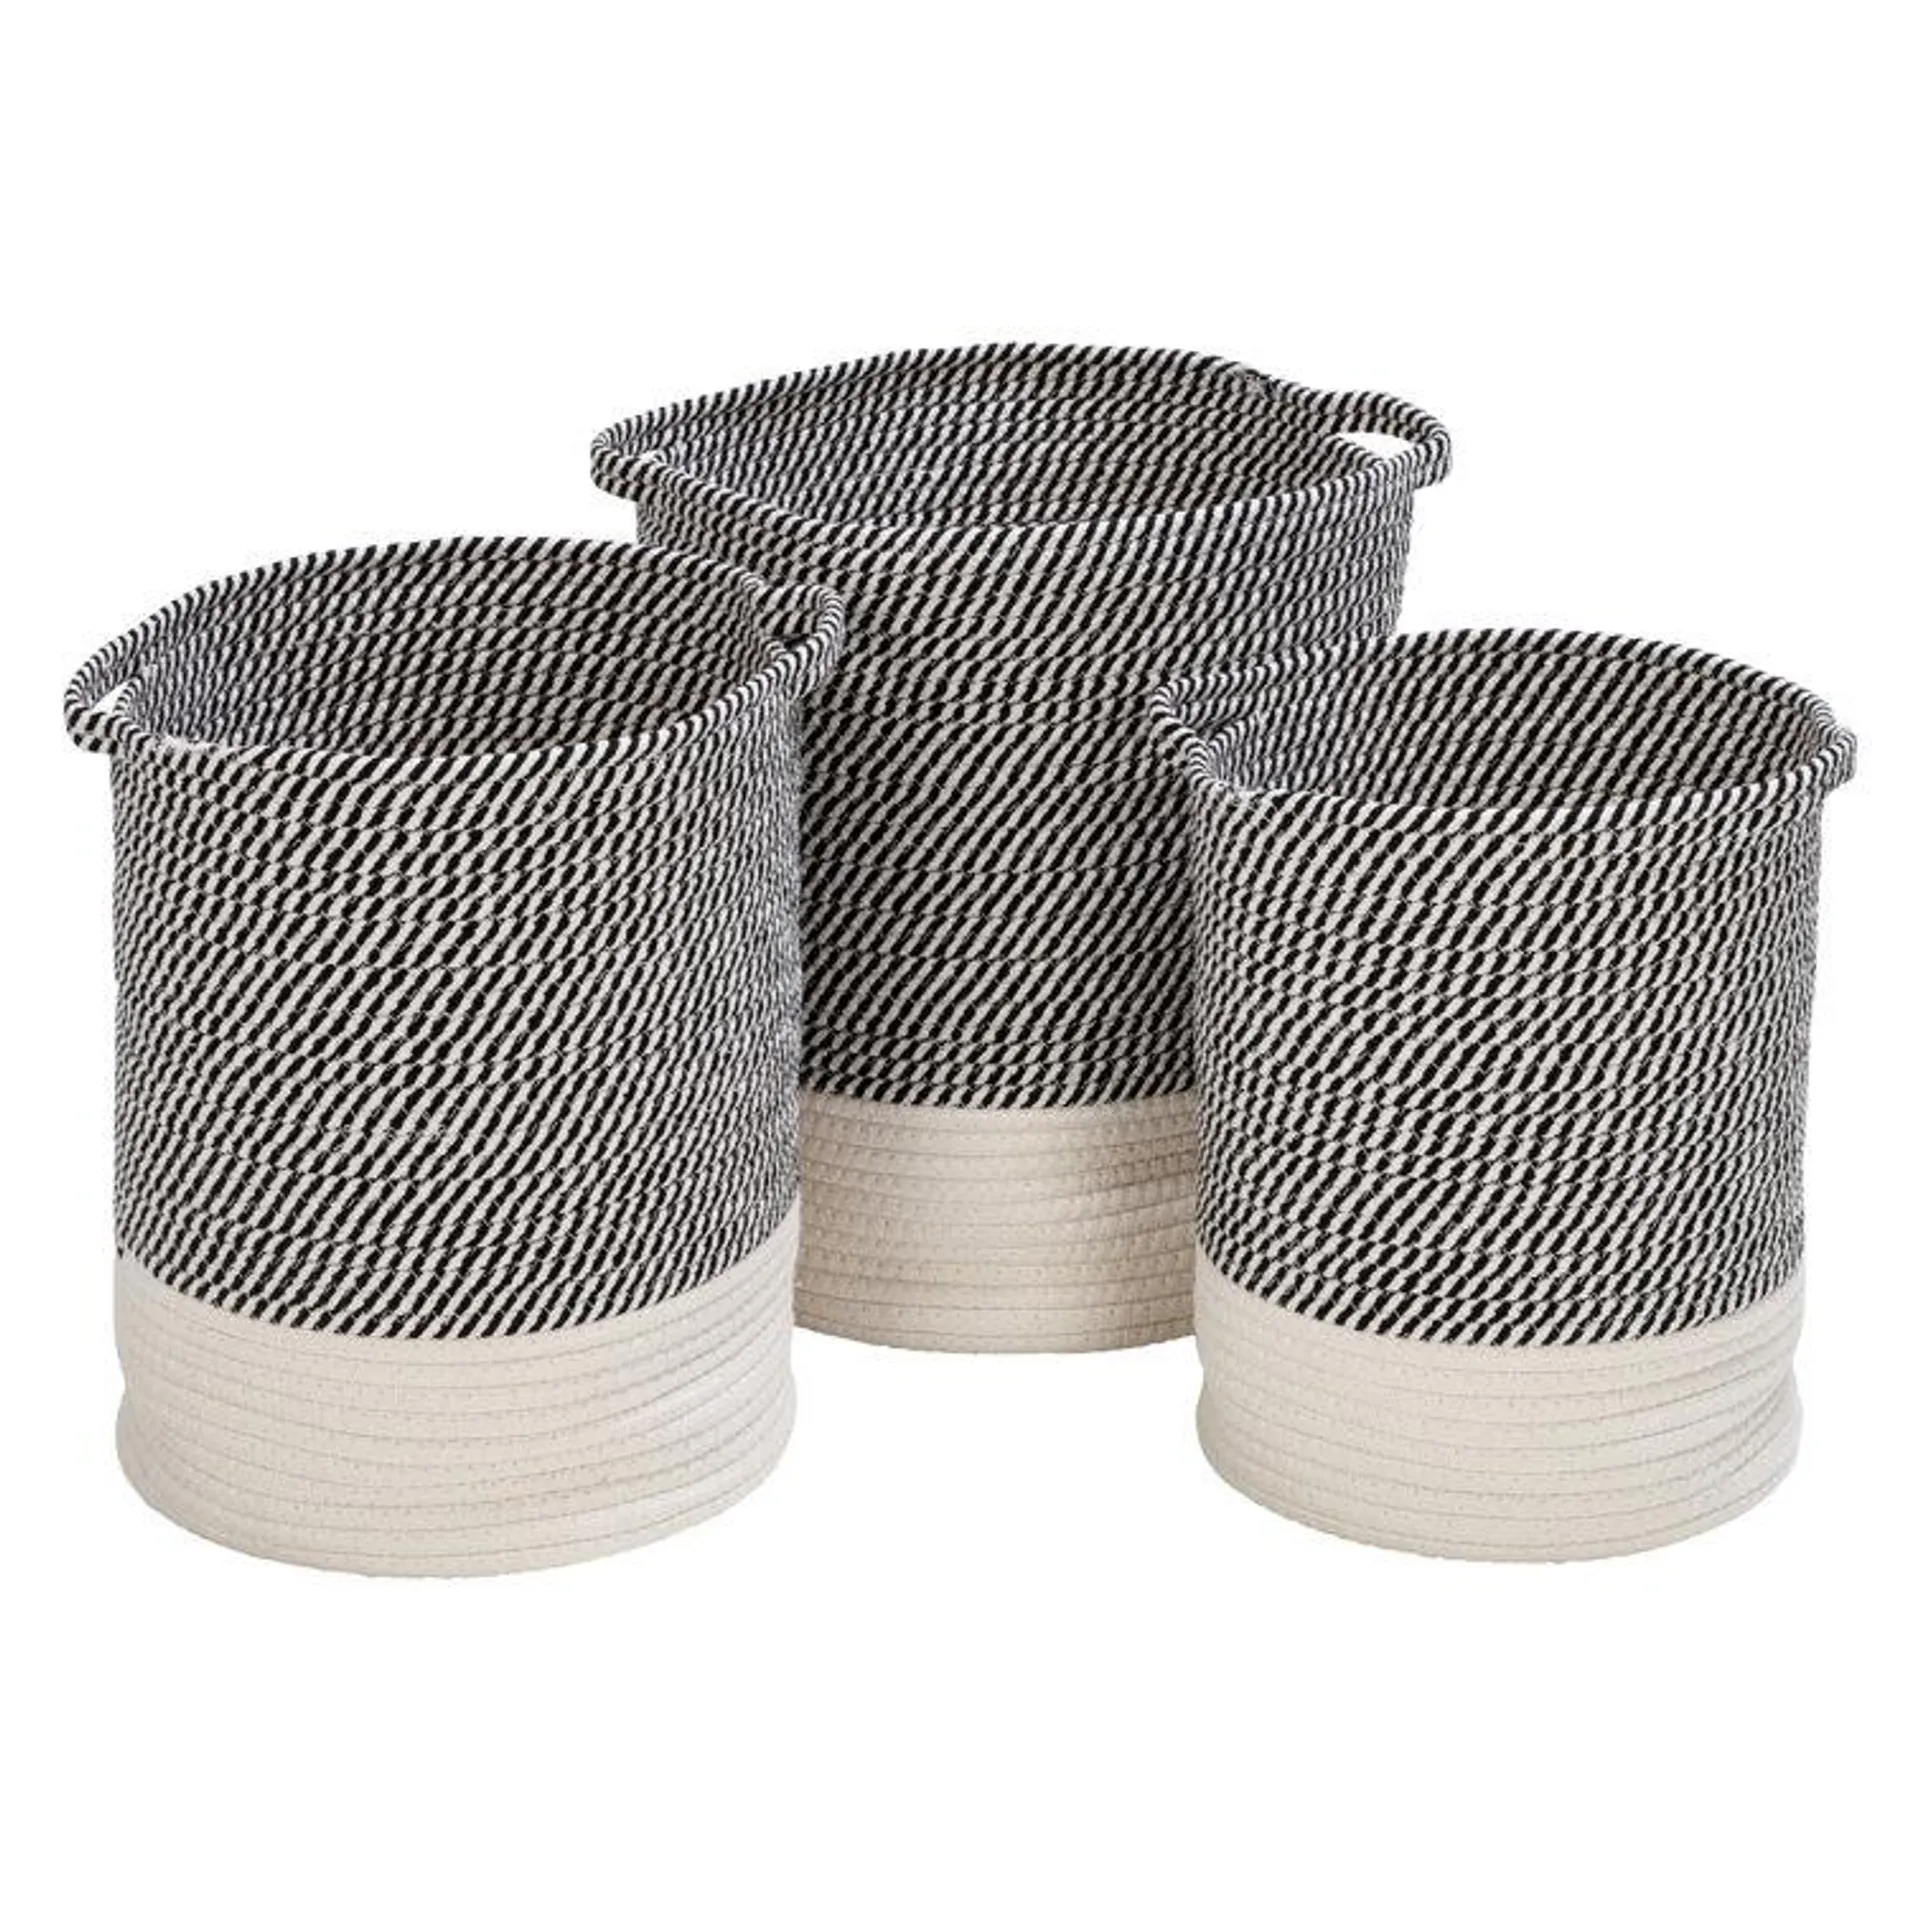 Nesting Fabric Basket - Set of 3 (Set of 3)